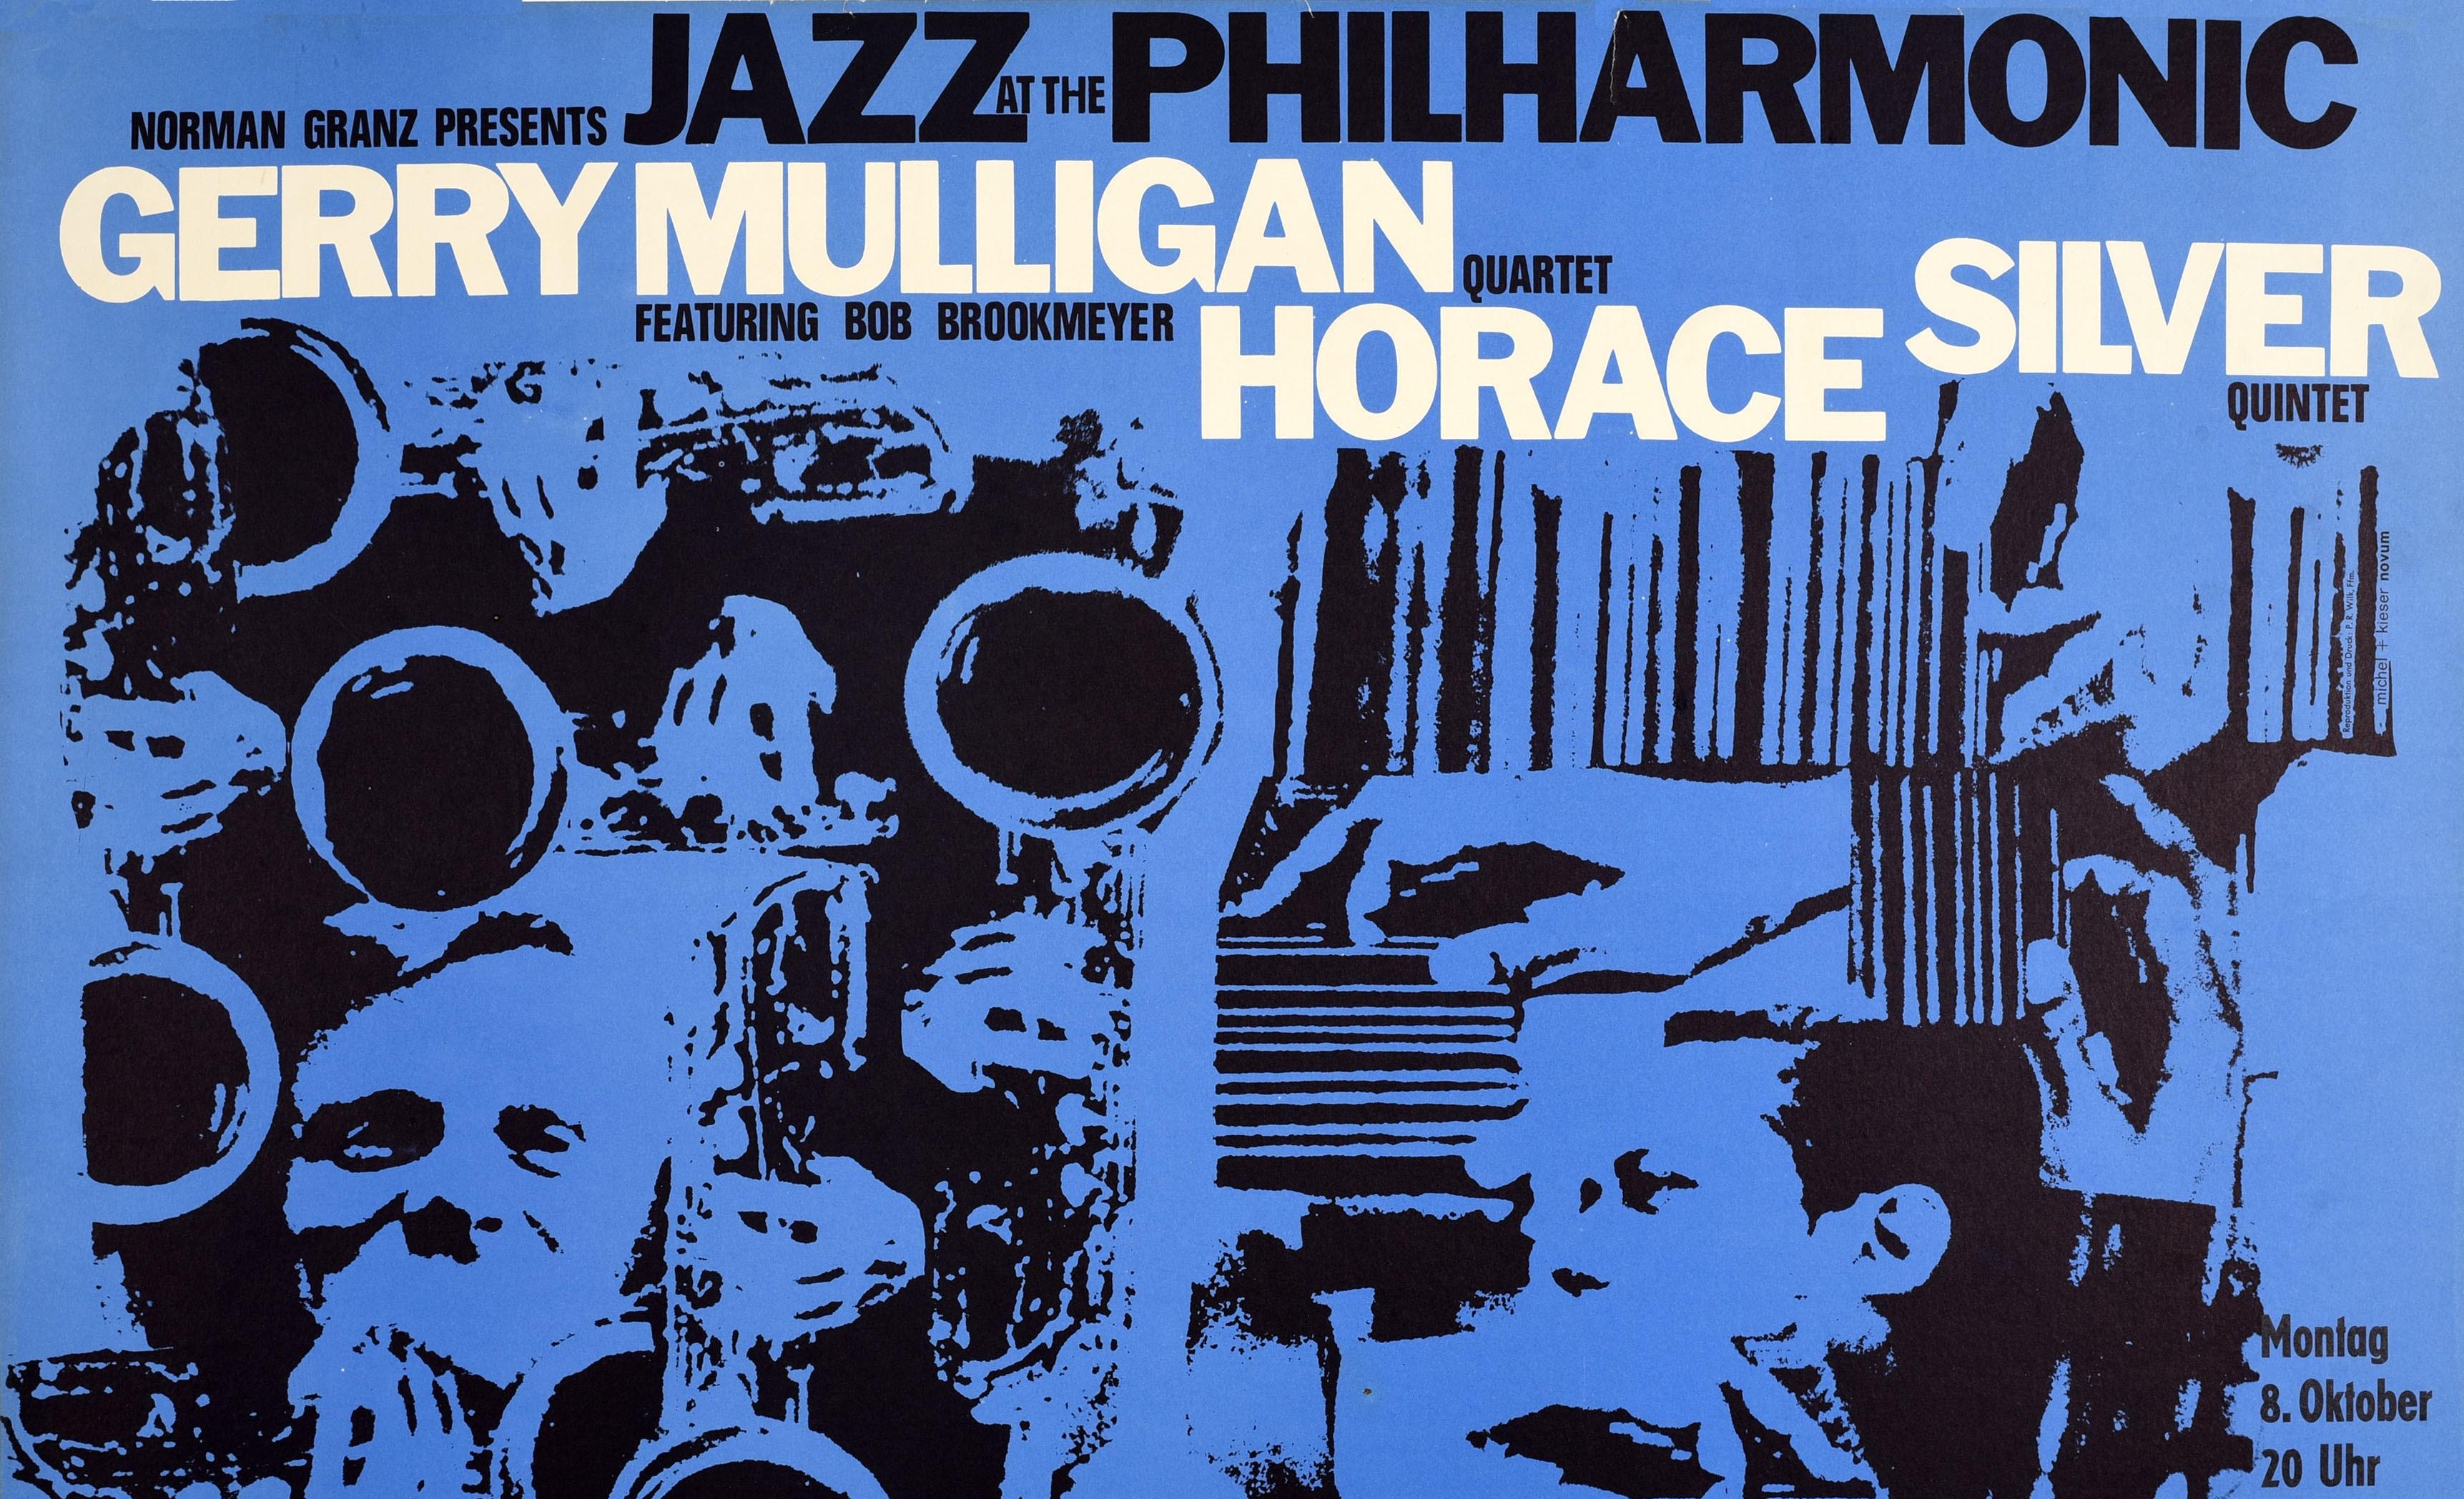 Affiche musicale vintage d'origine Norman Granz présentant le jazz au Philharmonic Art - Print de Günther Kieser